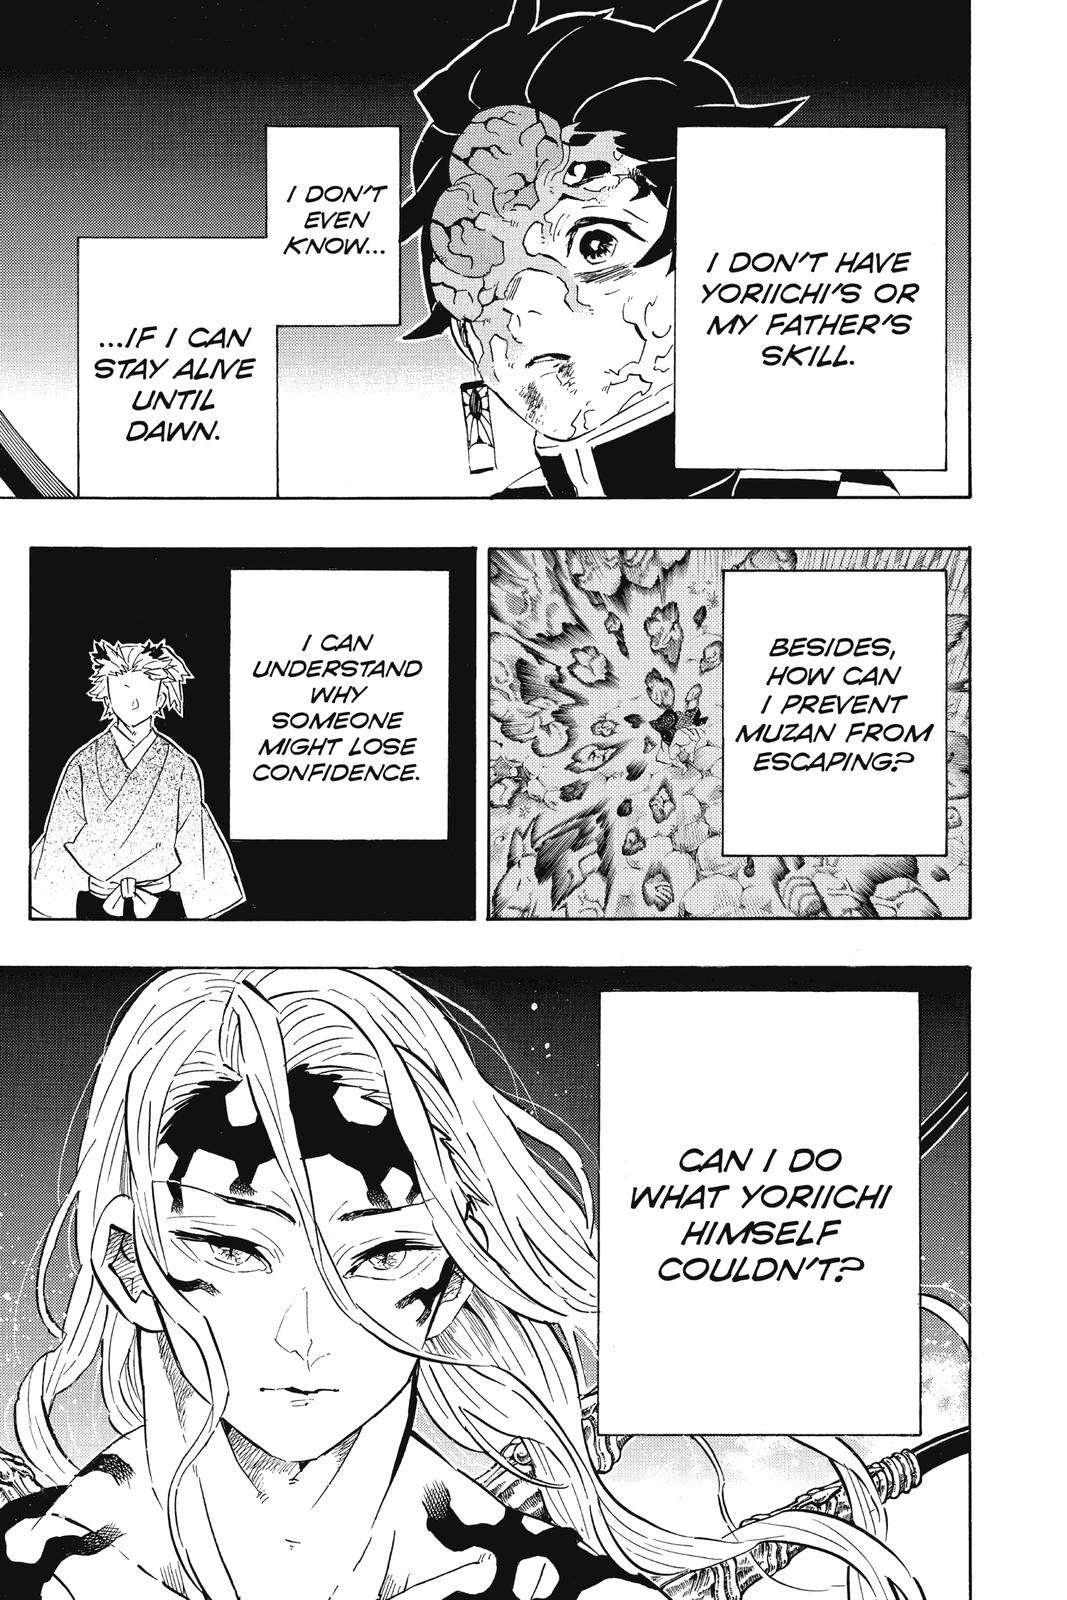 Demon Slayer Manga Manga Chapter - 192 - image 11